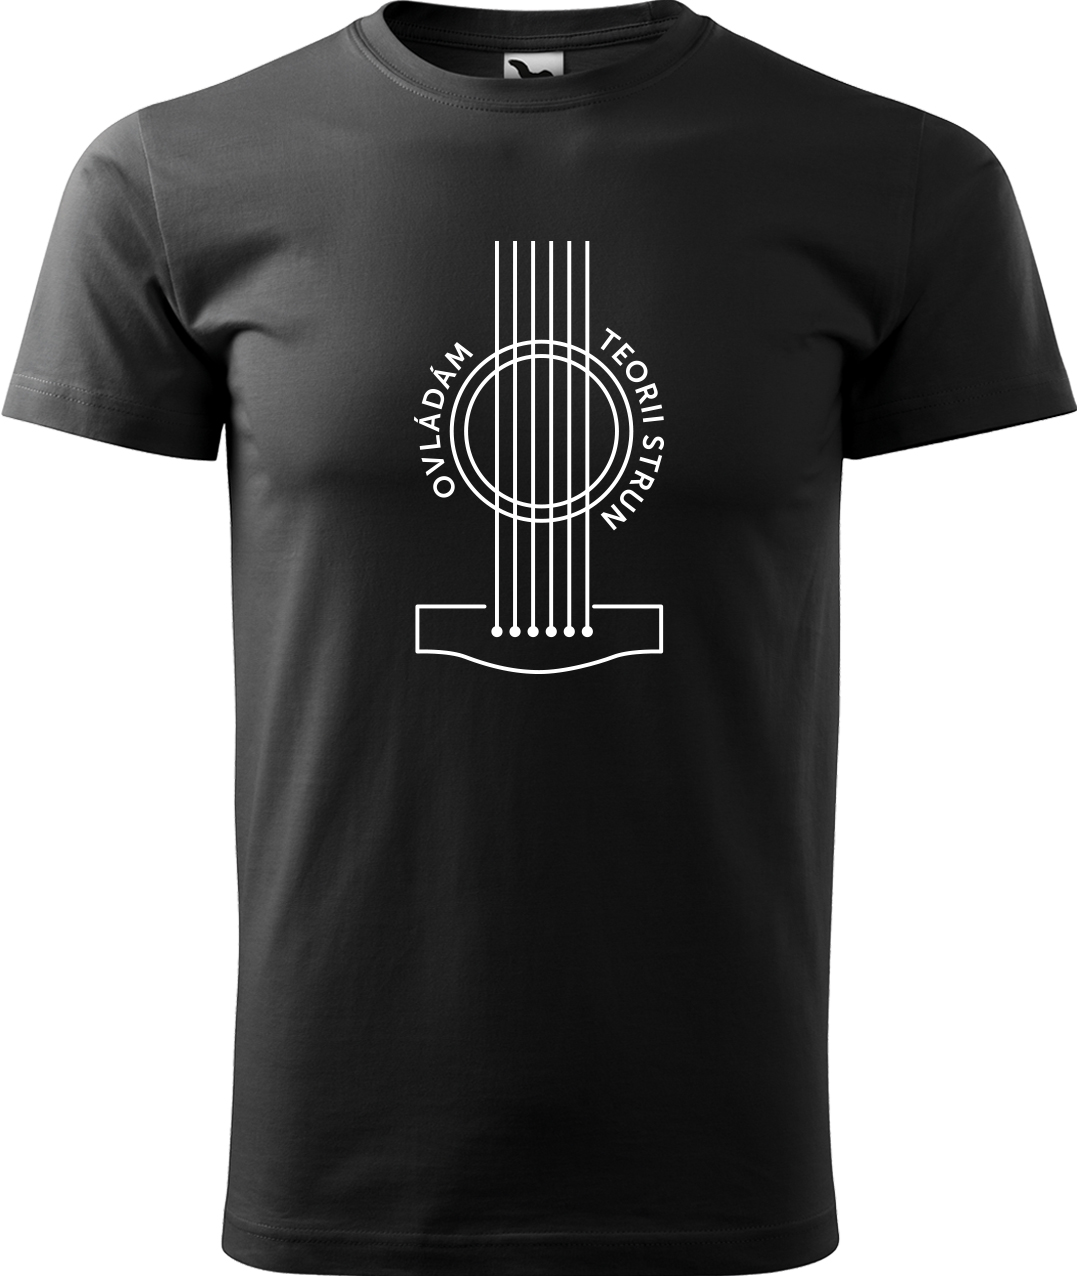 Pánské tričko s kytarou - Teorie strun Velikost: M, Barva: Černá (01), Střih: pánský